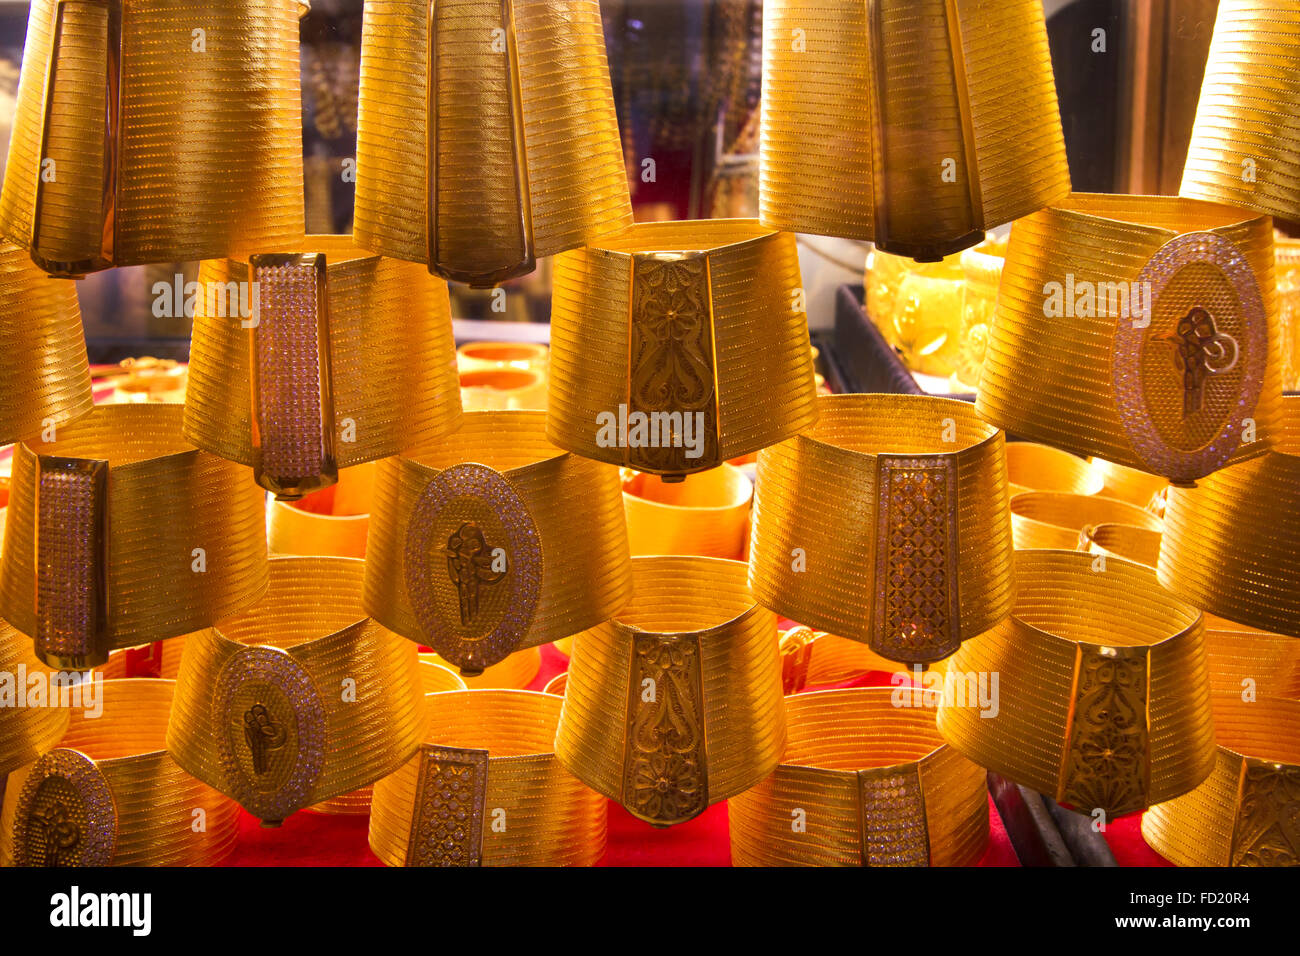 Arap gold - identische Anzeigen in gold Souks in all den arabischen Golfstaaten gesehen werden kann Stockfoto